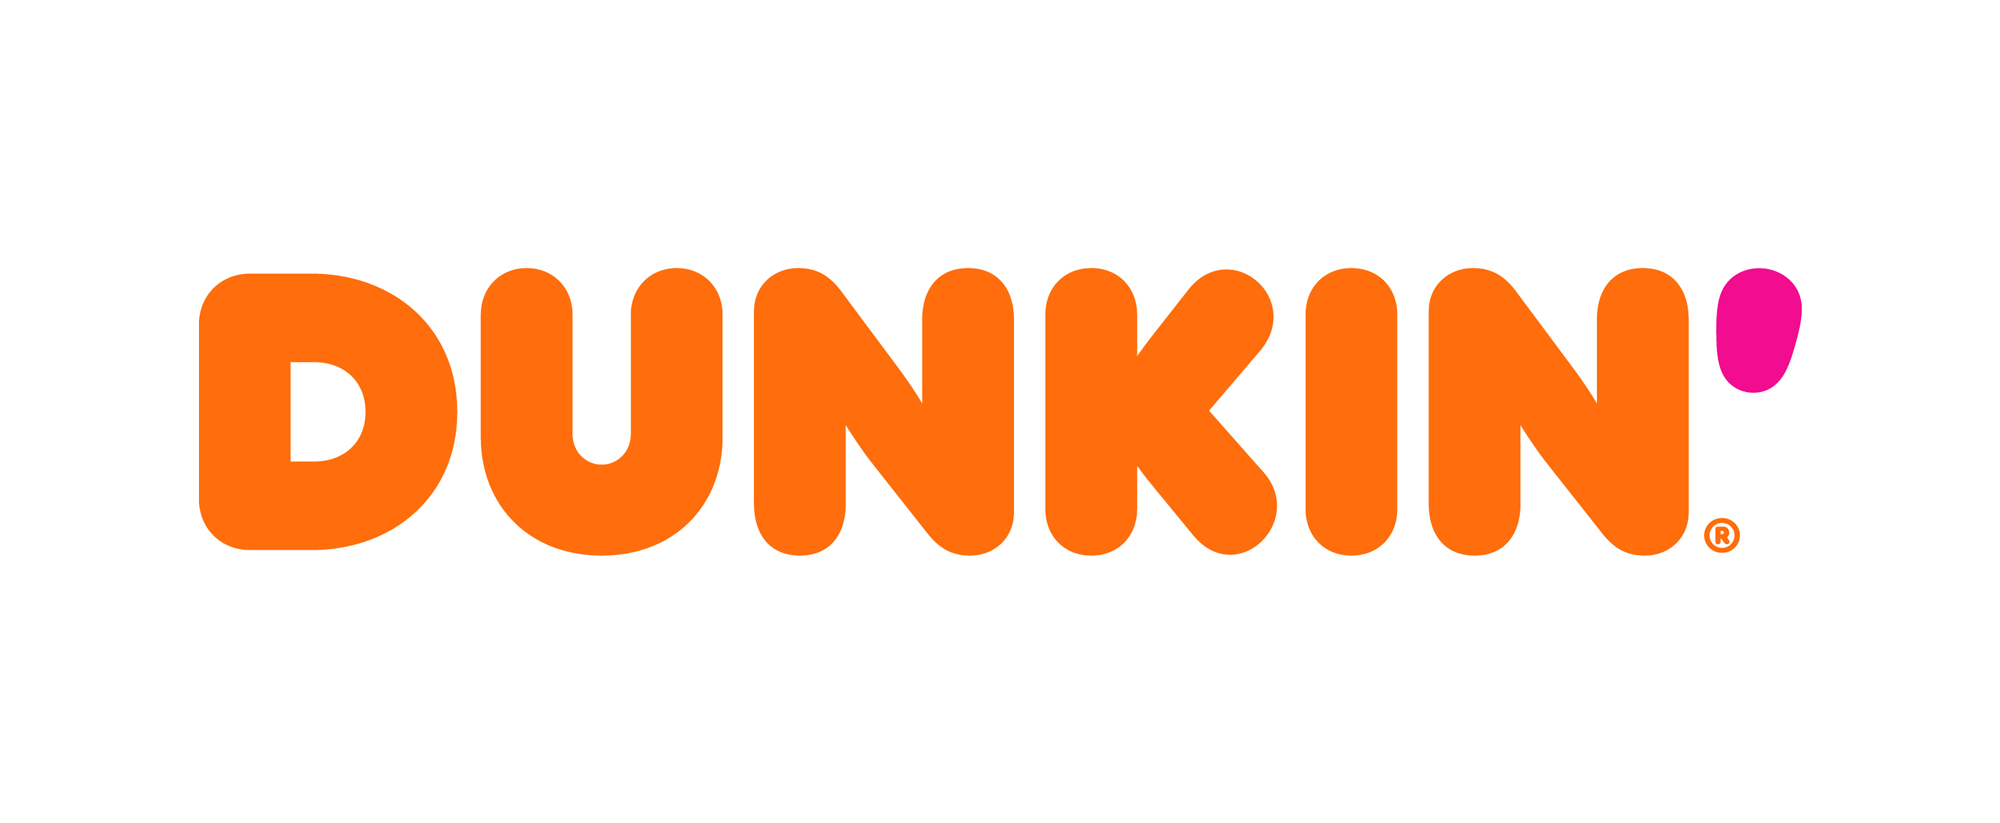 Dunkin' Donuts Brand Logo